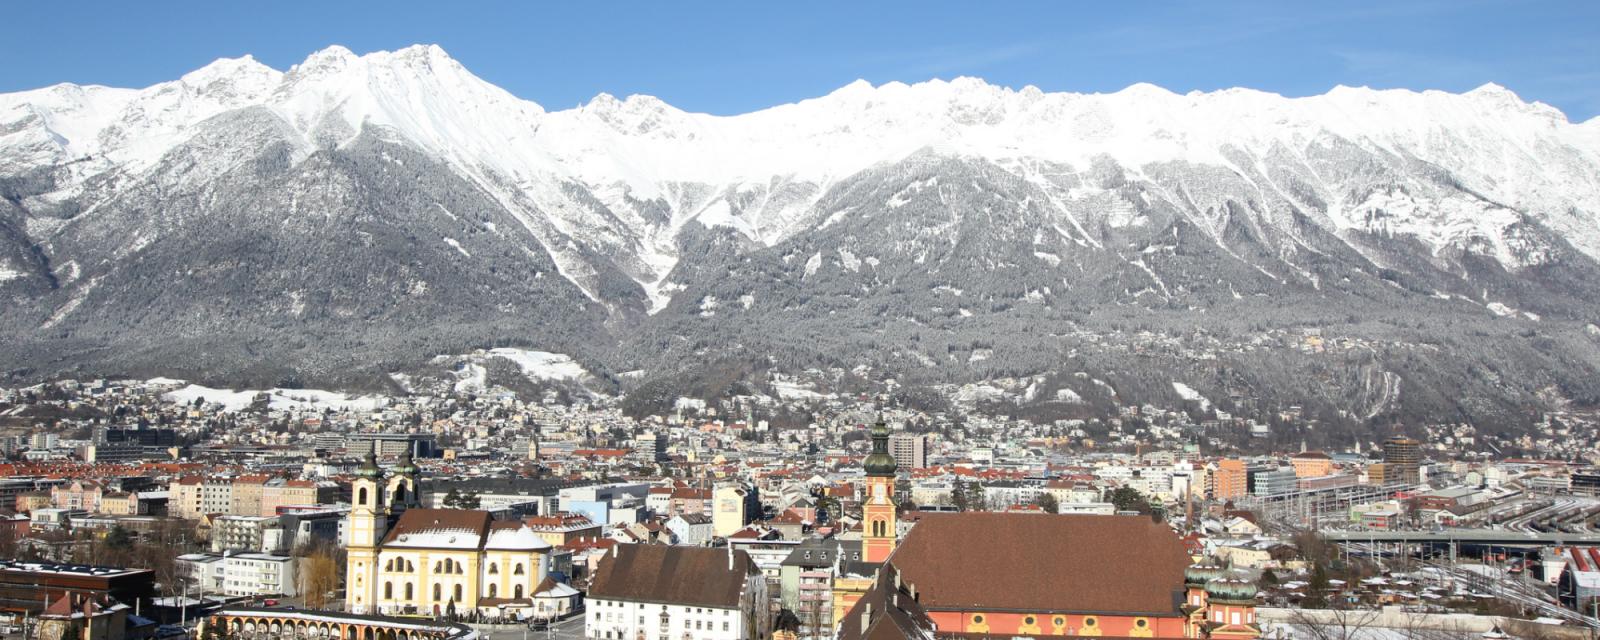 Dit zijn de leukste sneeuw highlights in Innsbruck 